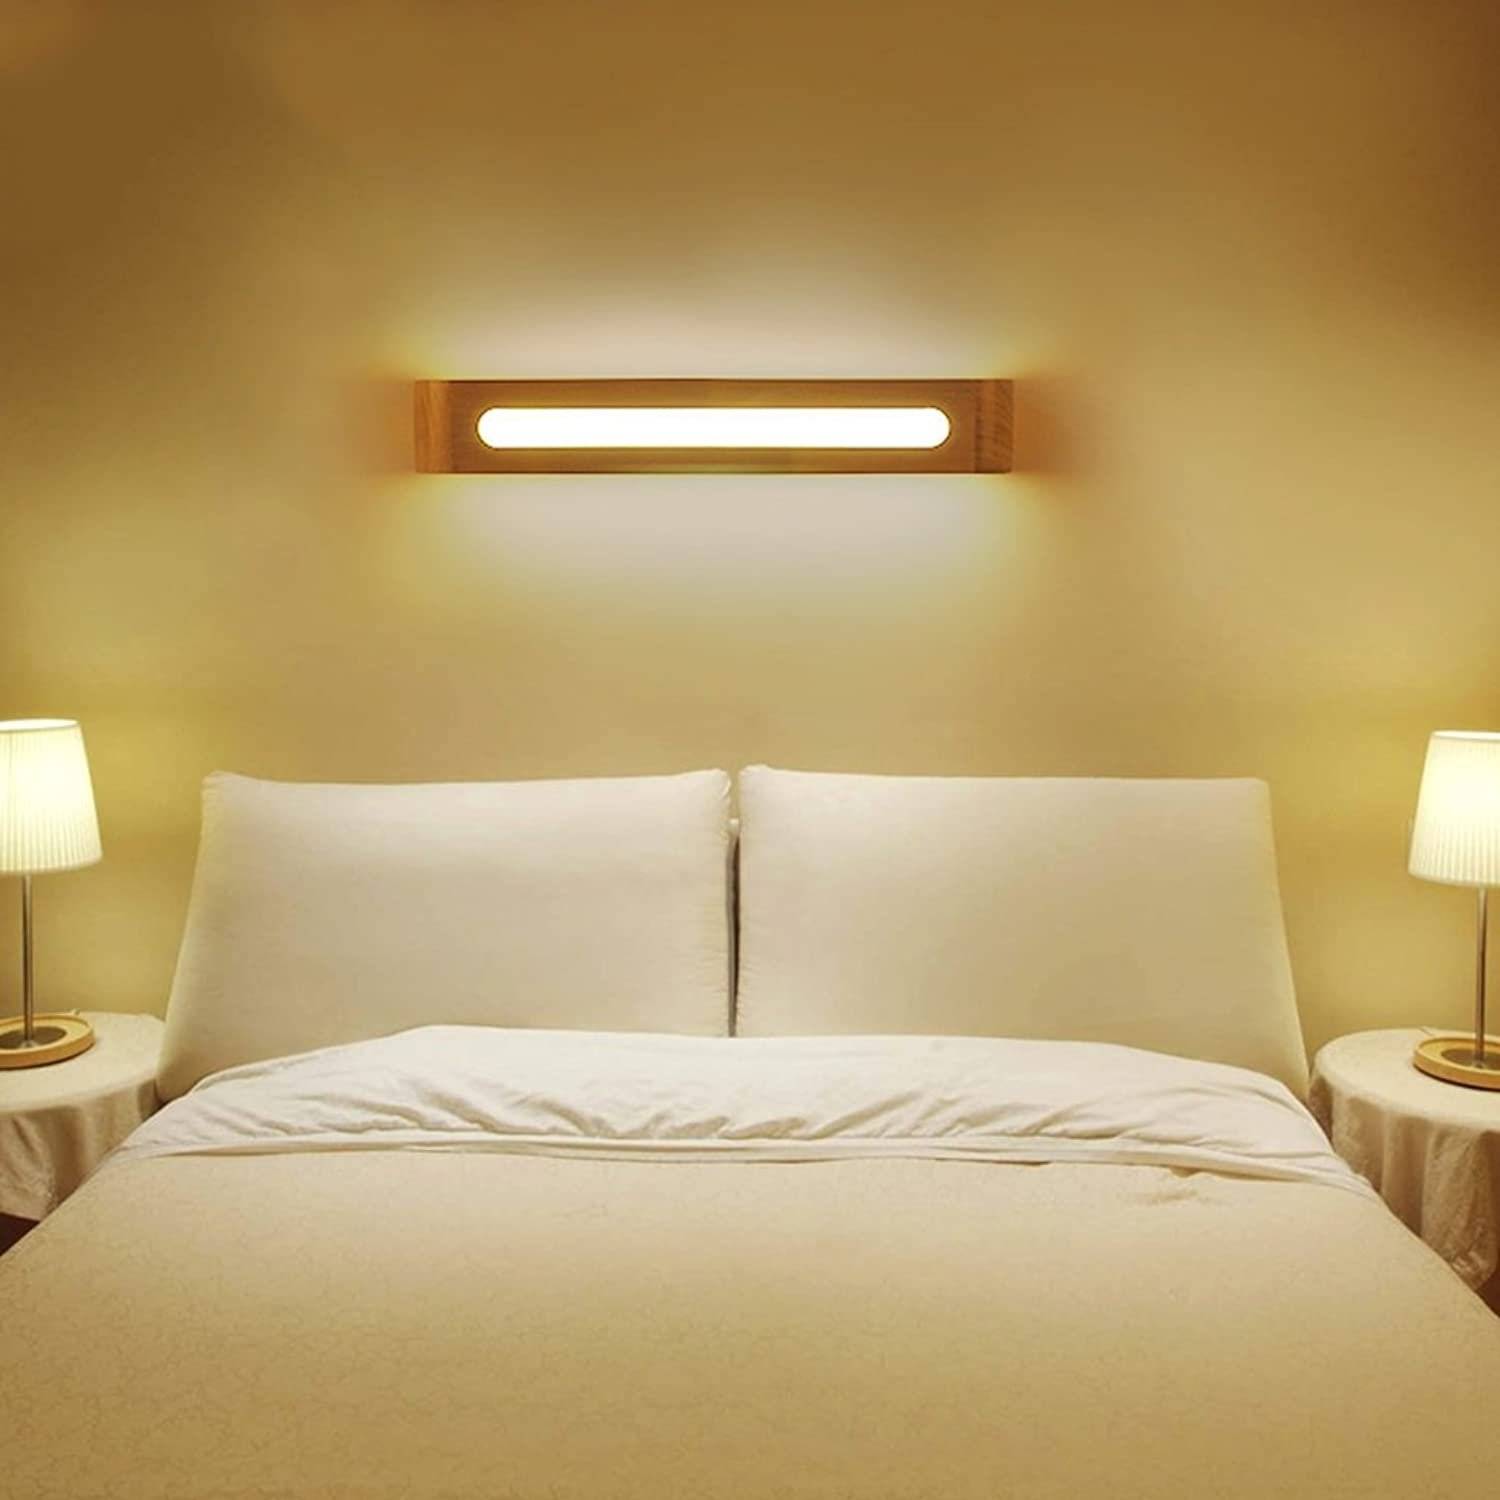 Светильники бра над кроватью в спальне: виды и расположение